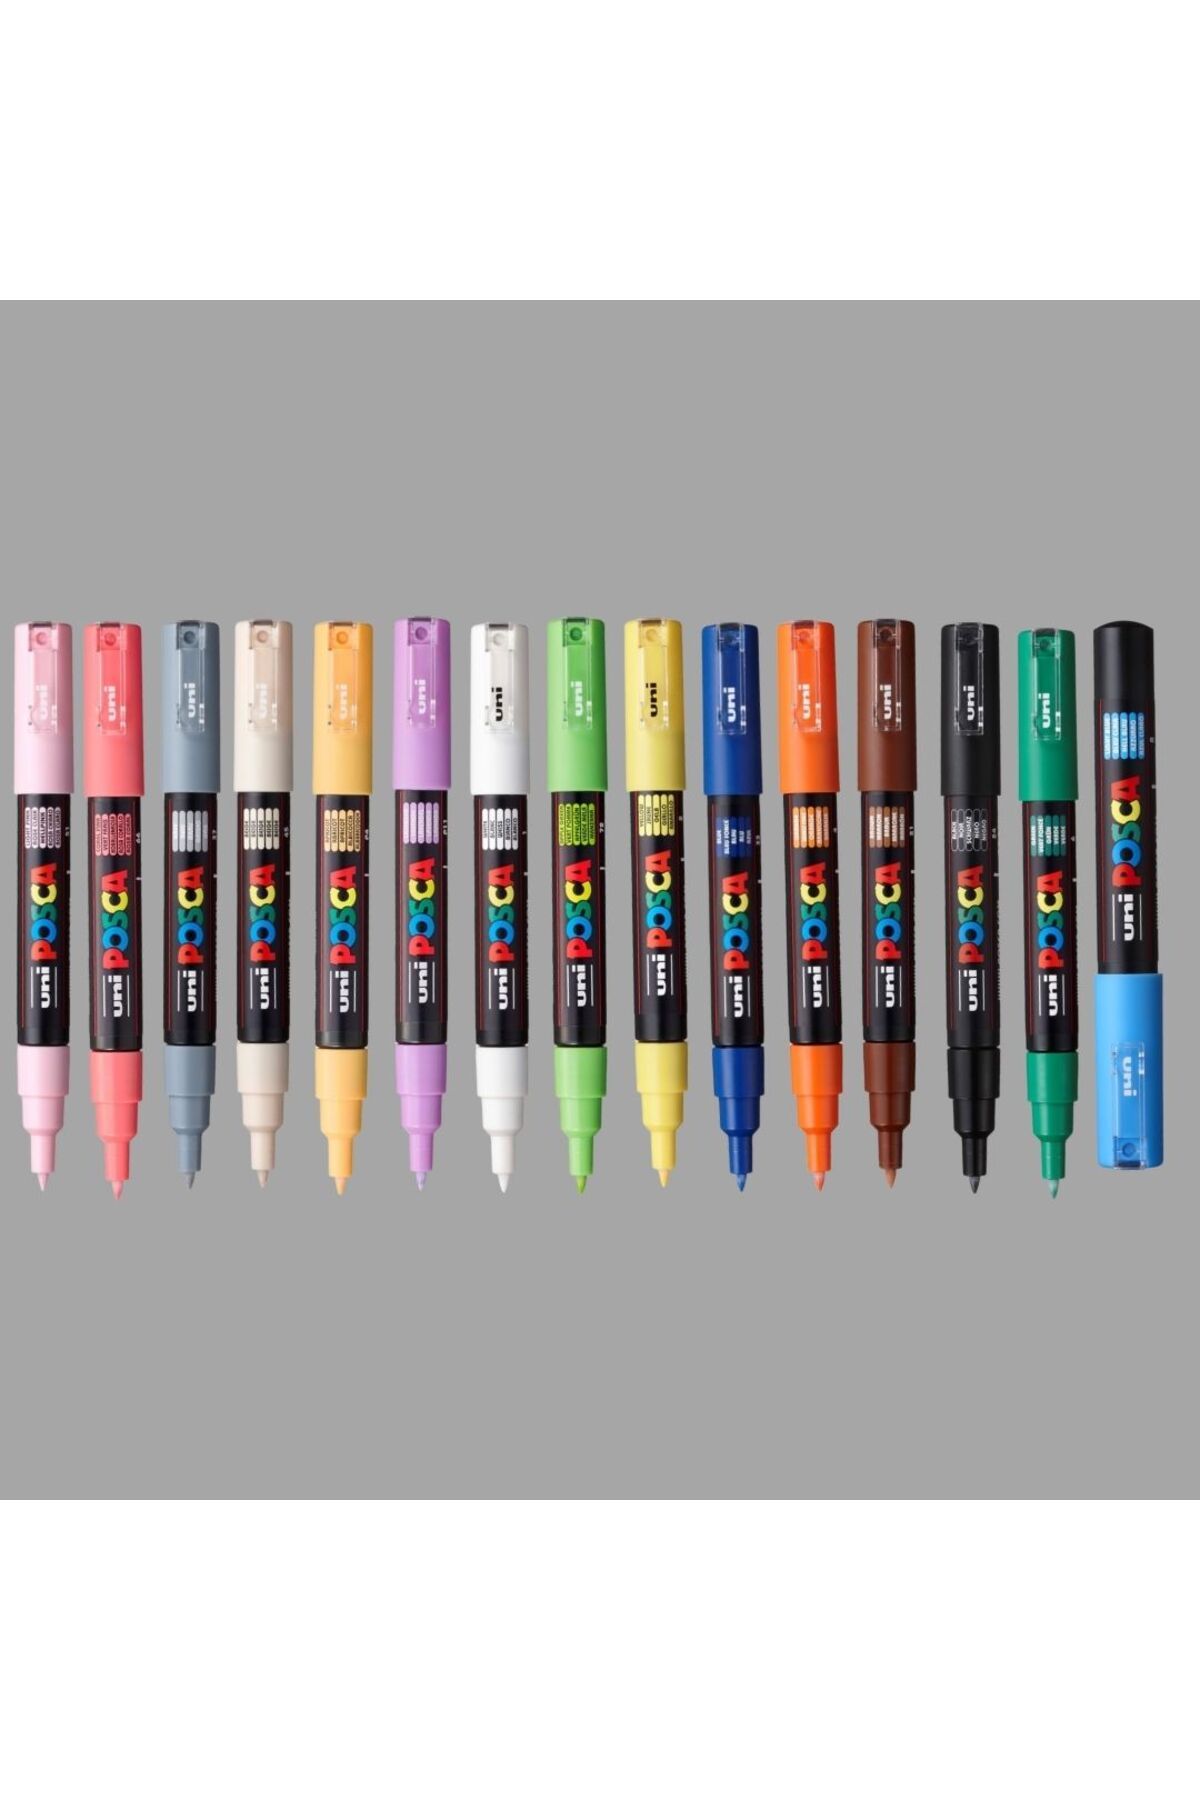 Uni Posca Marker Kalem Pc-1m (0.7mm) Keçe Uçlu 15 Adet Karışık Renkler Seti